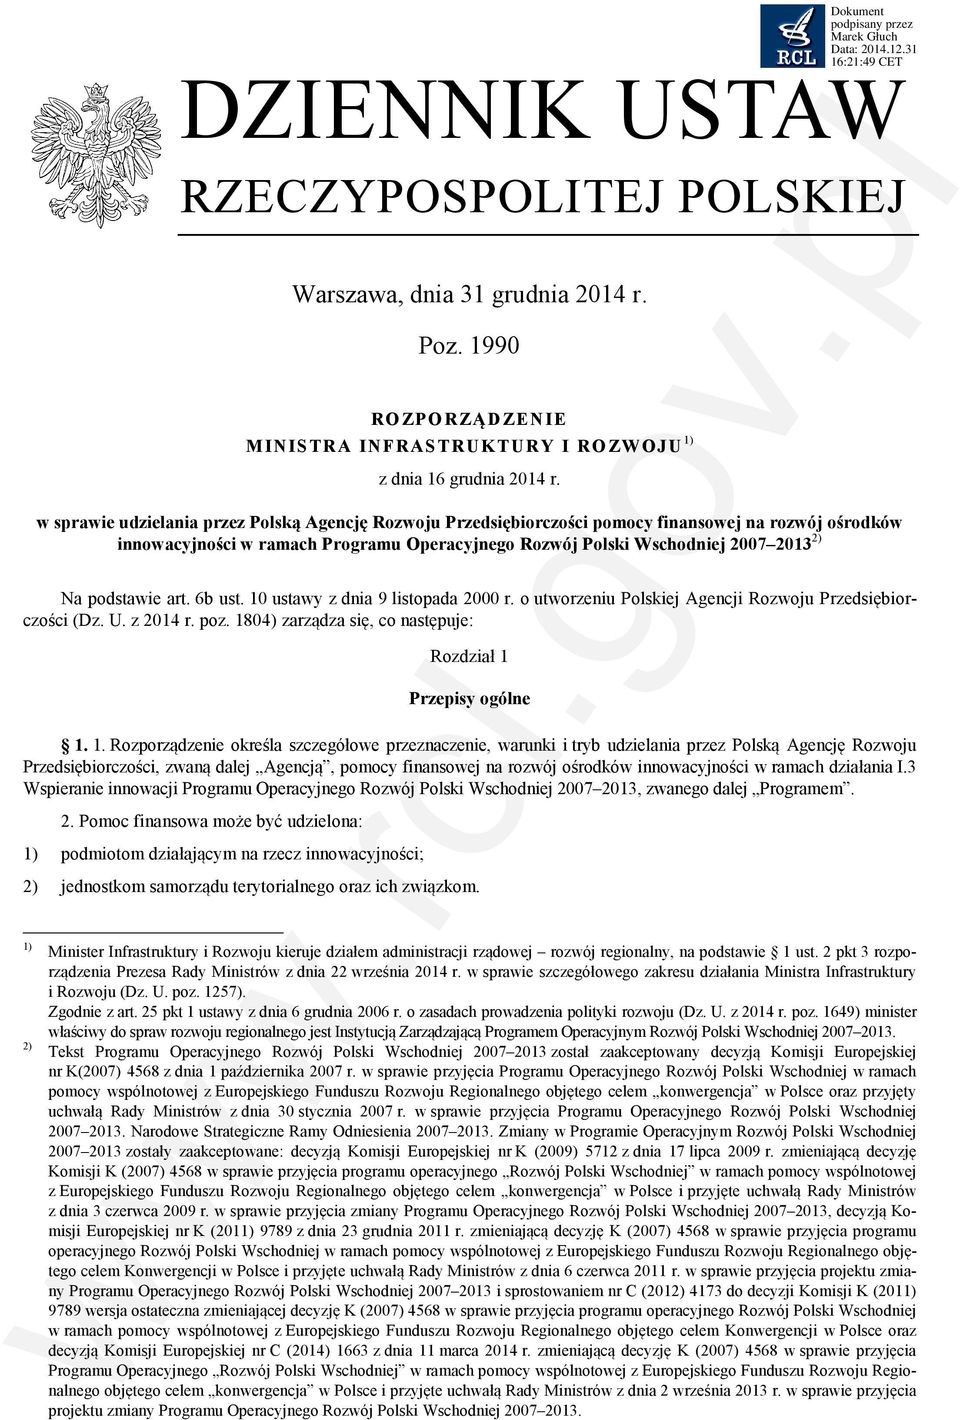 podstawie art. 6b ust. 10 ustawy z dnia 9 listopada 2000 r. o utworzeniu Polskiej Agencji Rozwoju Przedsiębiorczości (Dz. U. z 2014 r. poz.